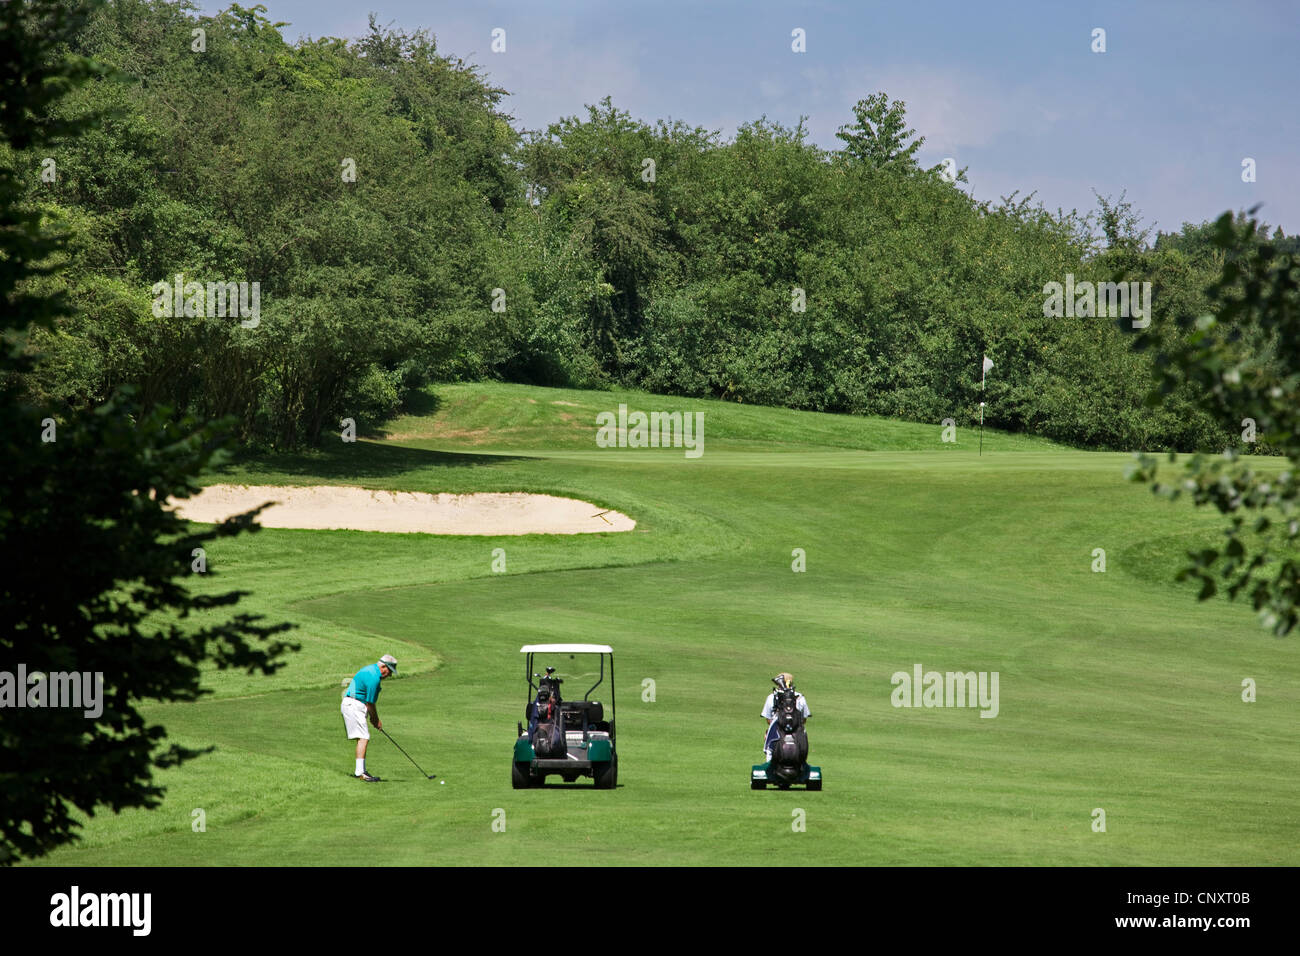 Titolare di pensione o di rendita con golf cart per giocare a golf sul fairway del campo da golf in Europa Foto Stock